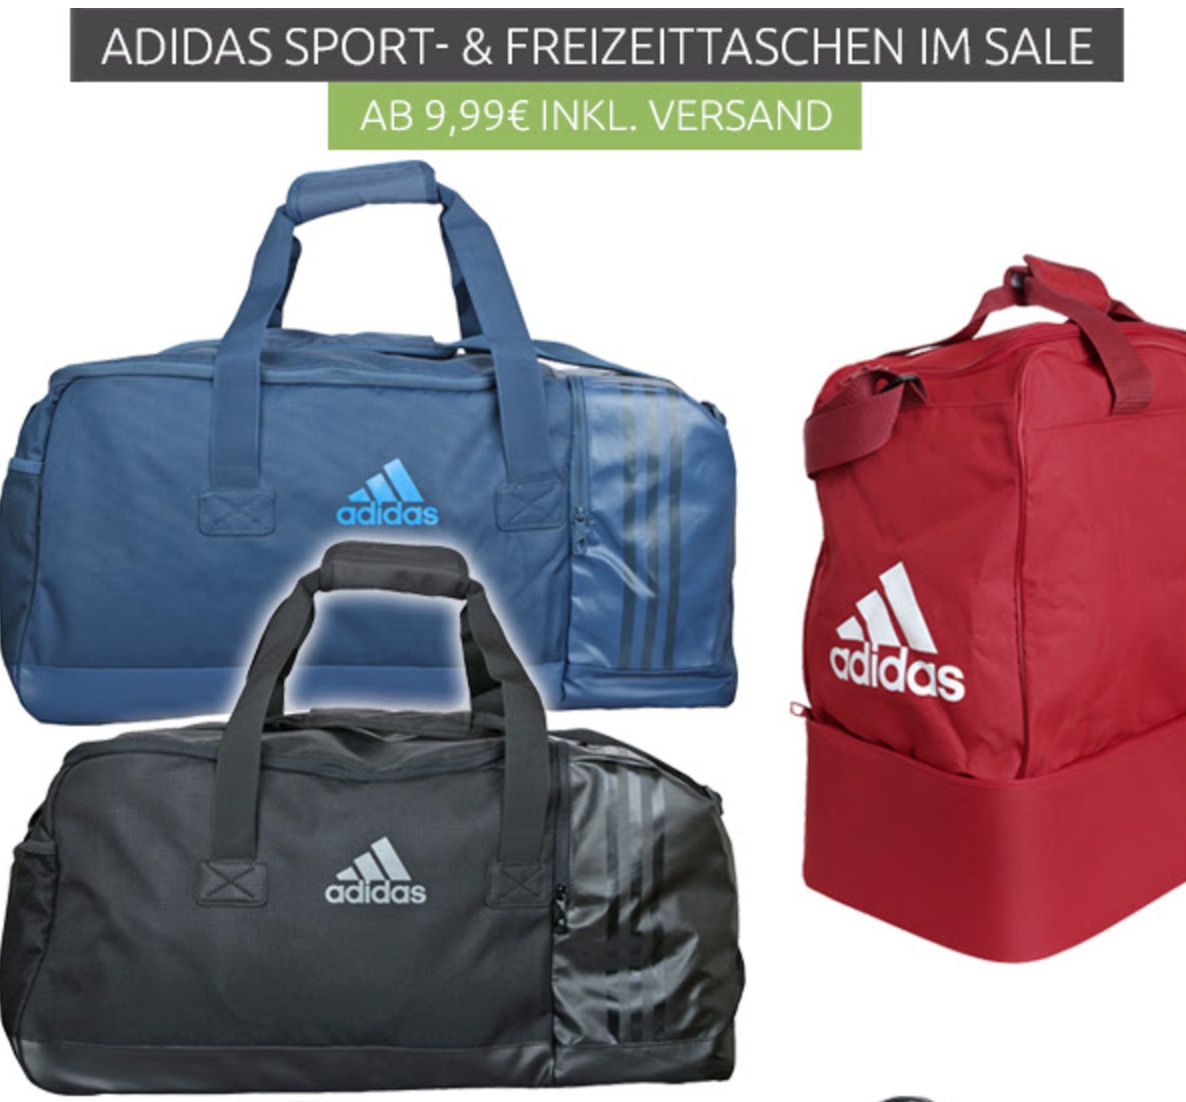 Verschiedene Adidas Sporttaschen ab 9,99 Euro inkl. Versand